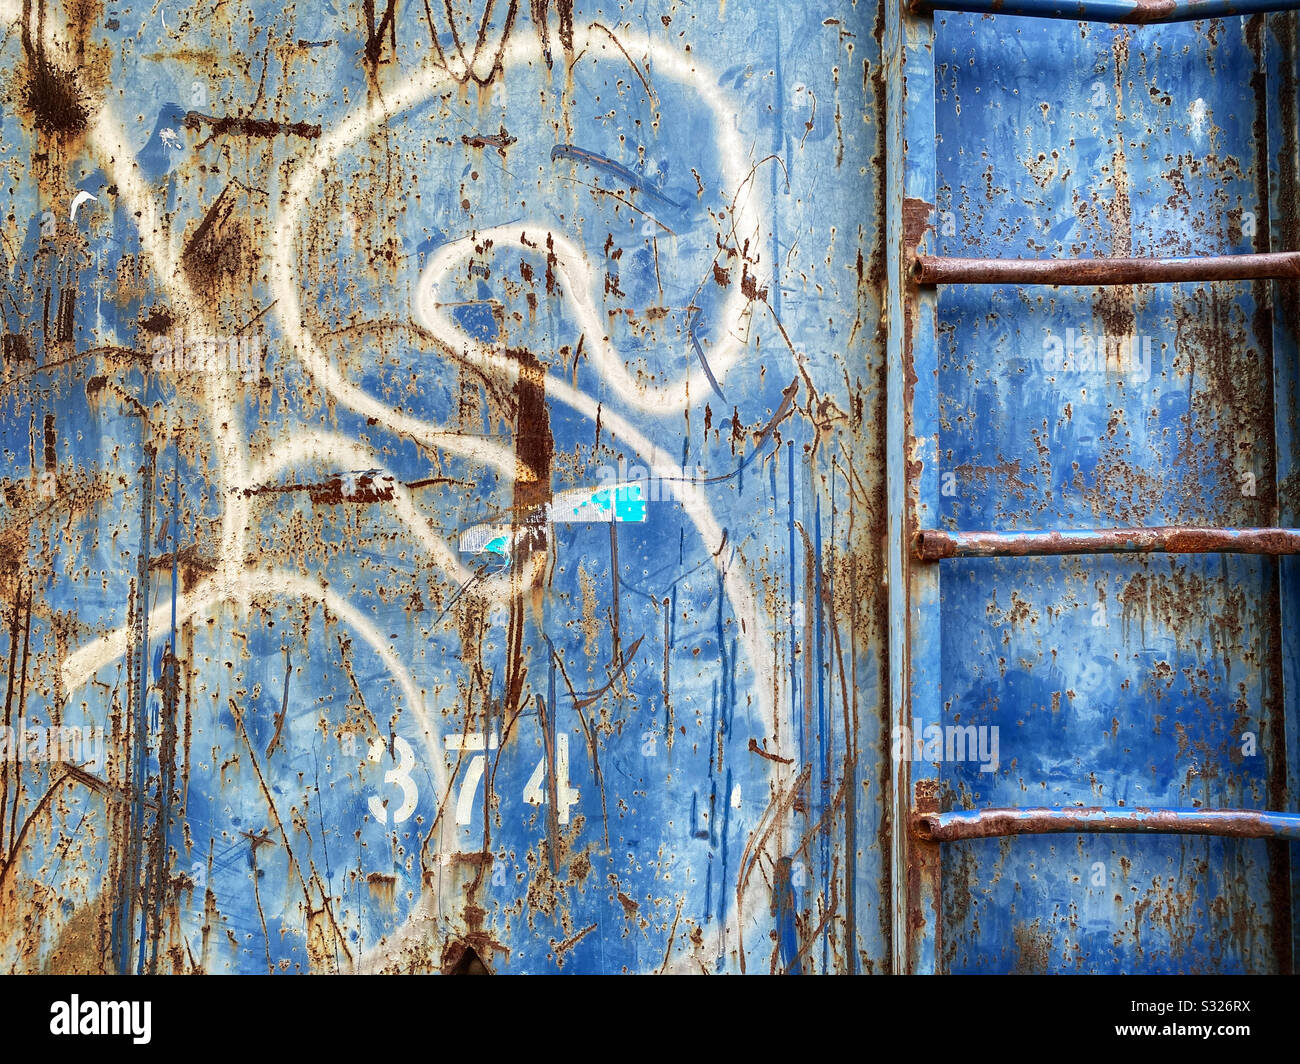 Lato di un cassonetto con segni di ruggine, graffiti e una scala Foto Stock